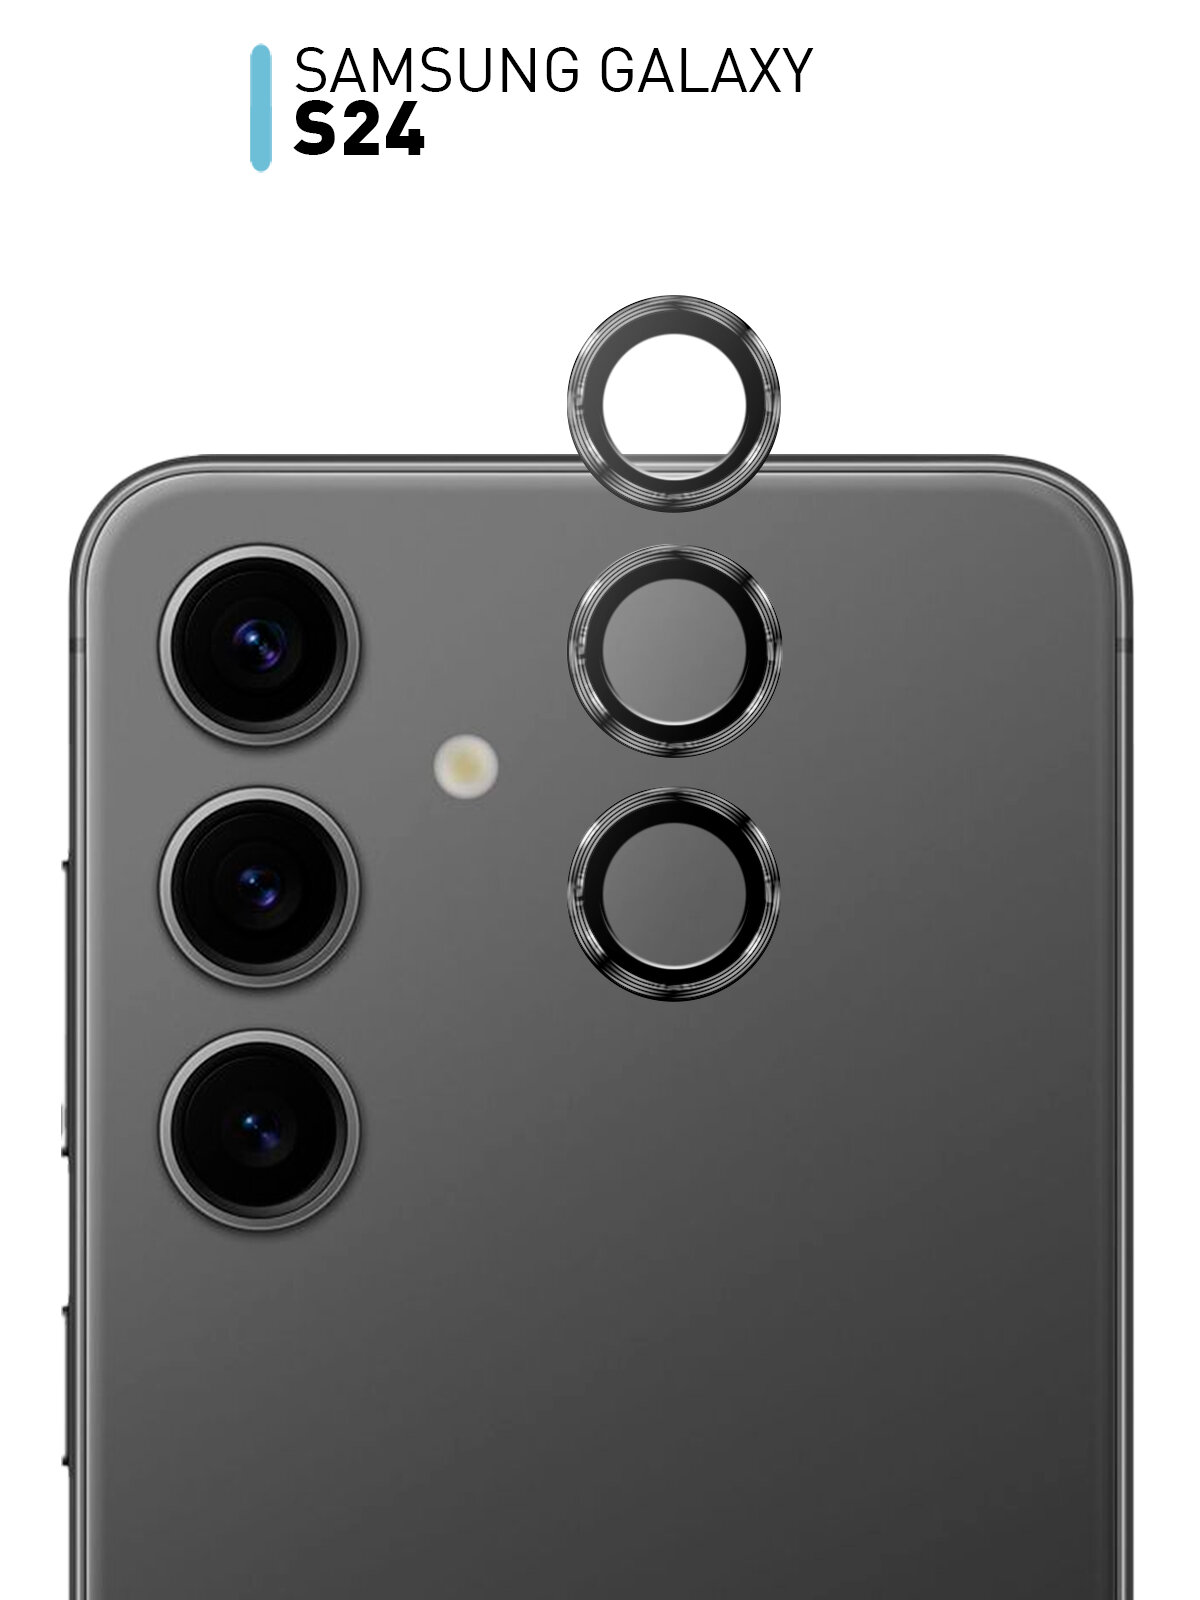 Стекло на камеру ROSCO для Samsung Galaxy S24 (Самсунг Галакси С24) прозрачное с чёрным ободком 3шт.